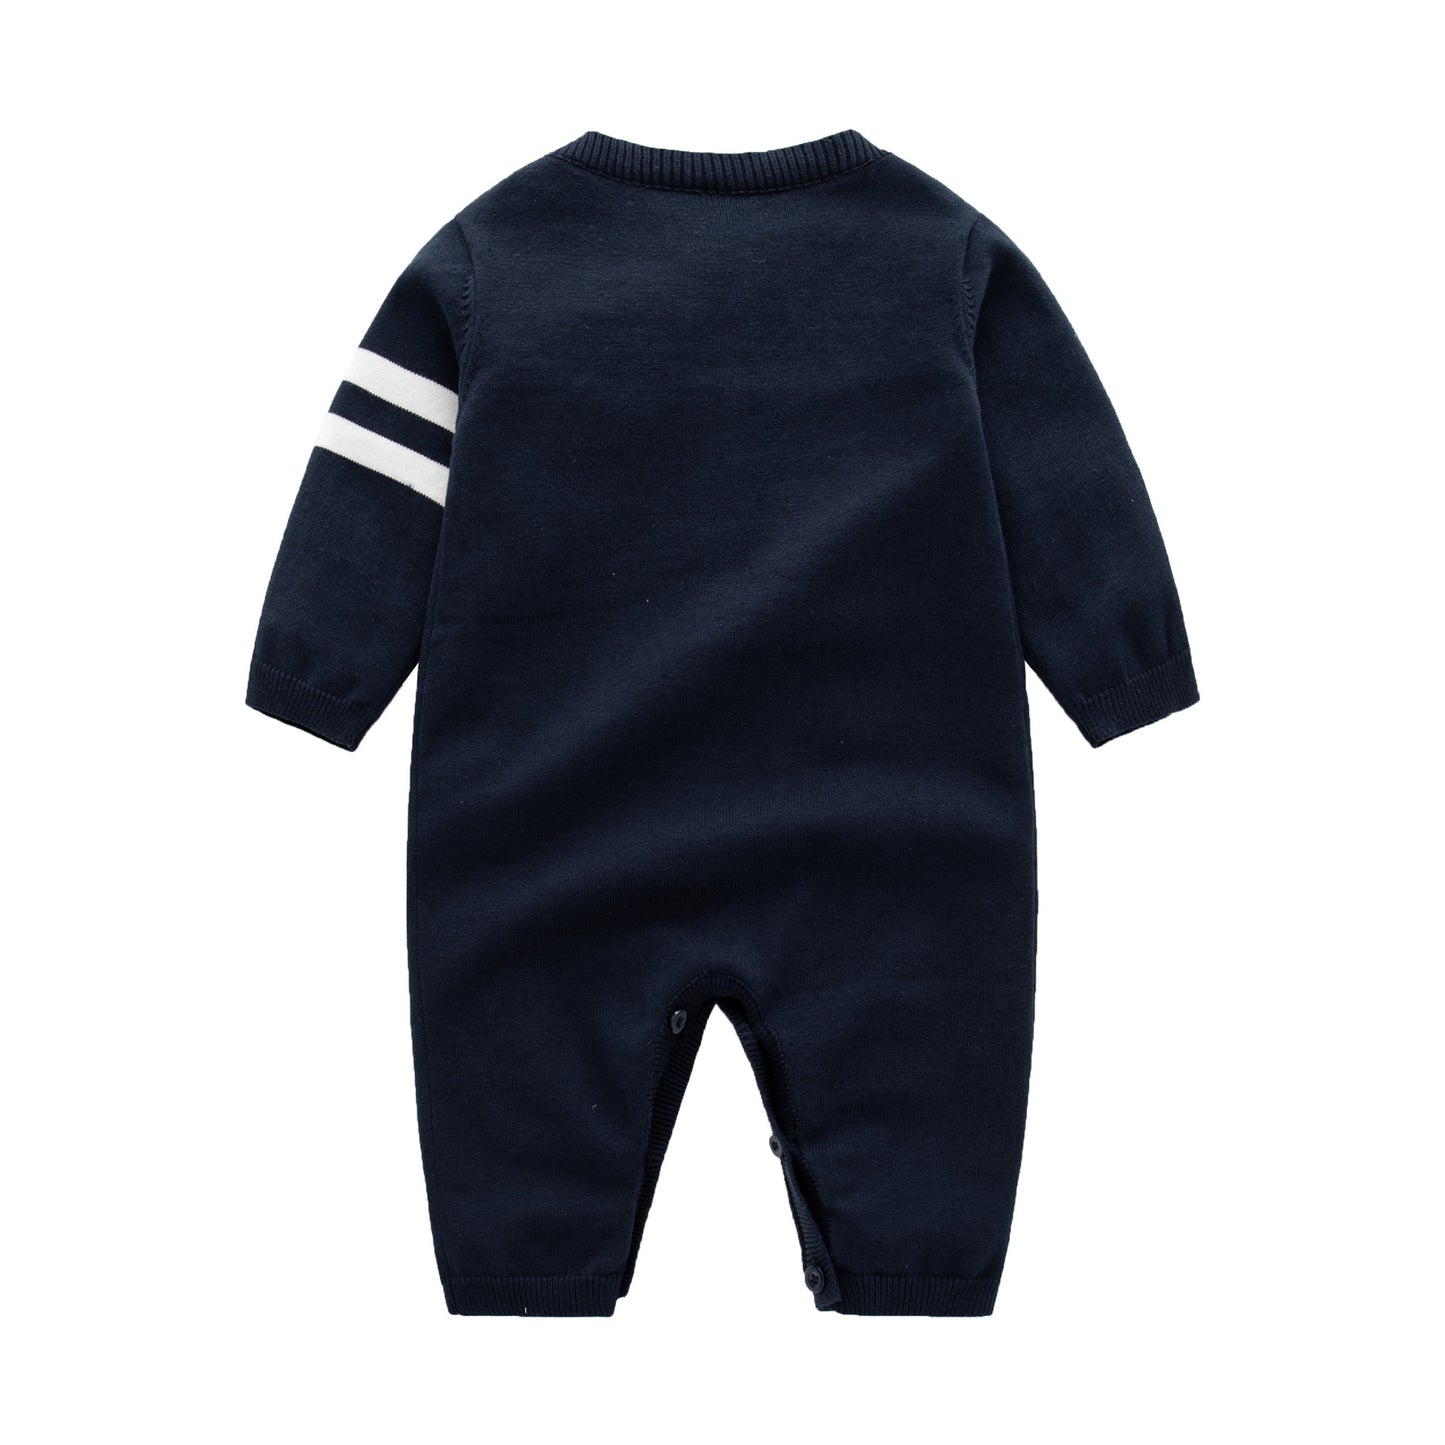 Mameluco de moda con botones completos y diseño de rayas laterales con patrón bordado de letras para bebés 